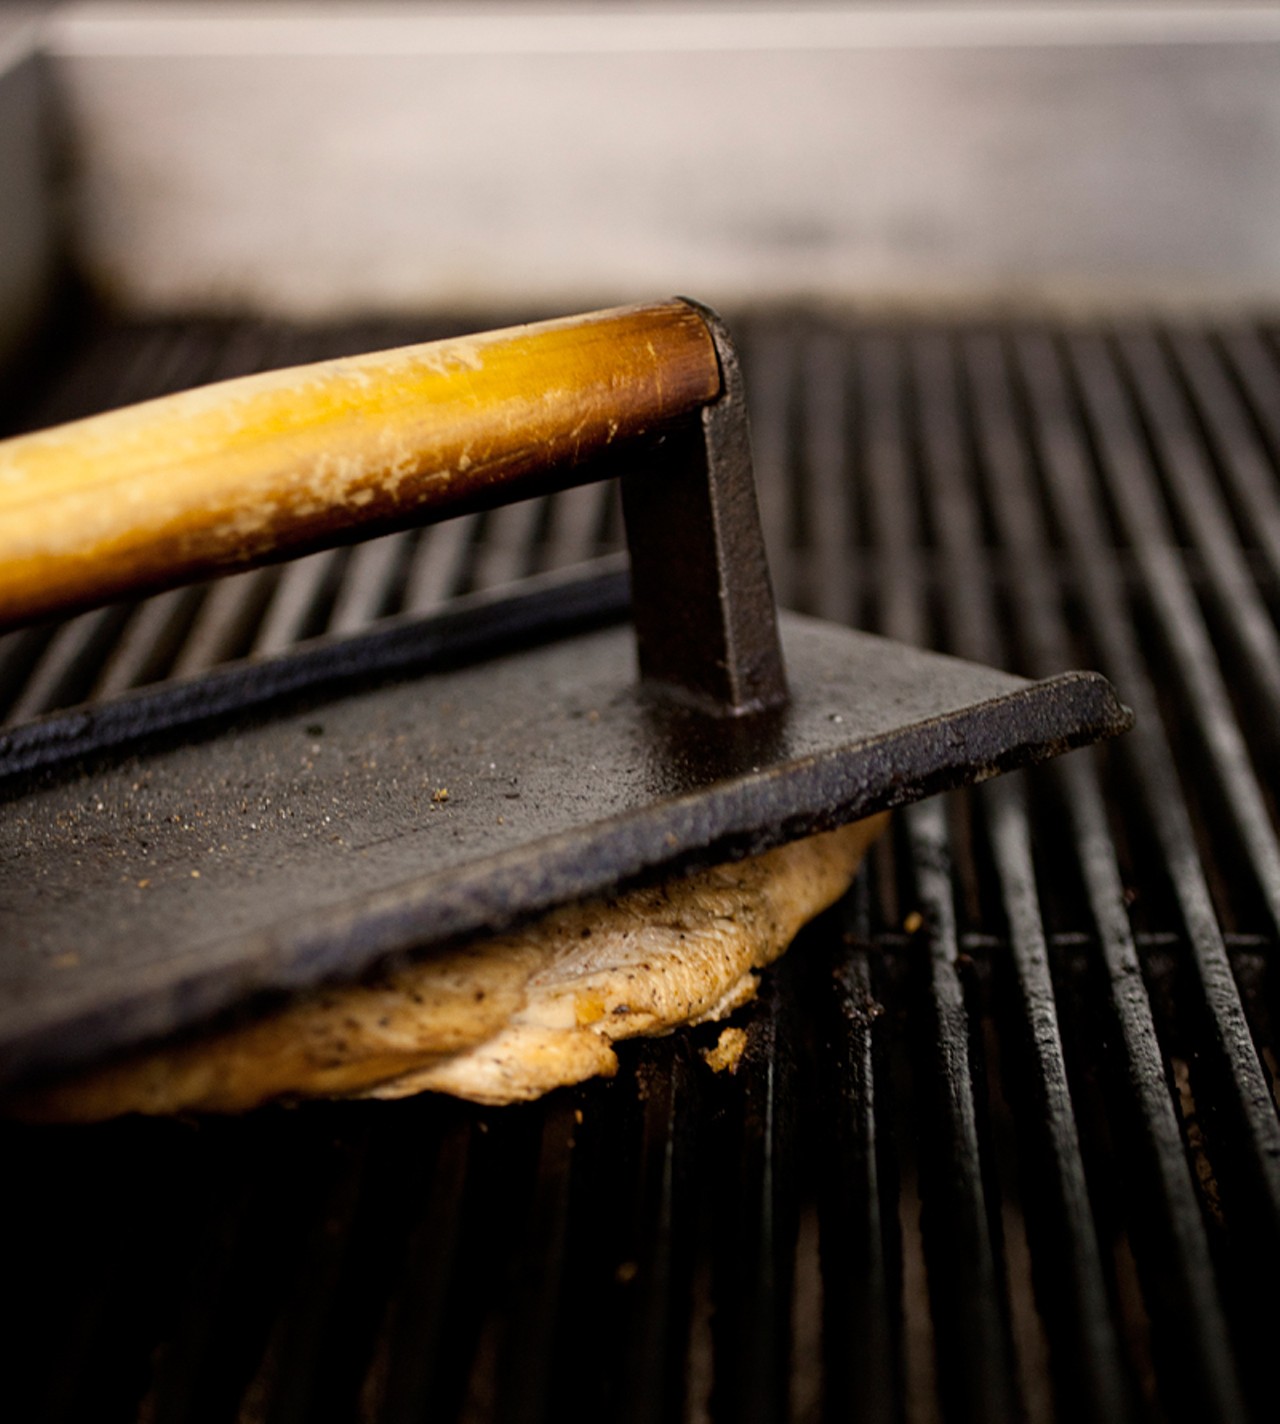 The smoked-turkey tenderloin on the grill.